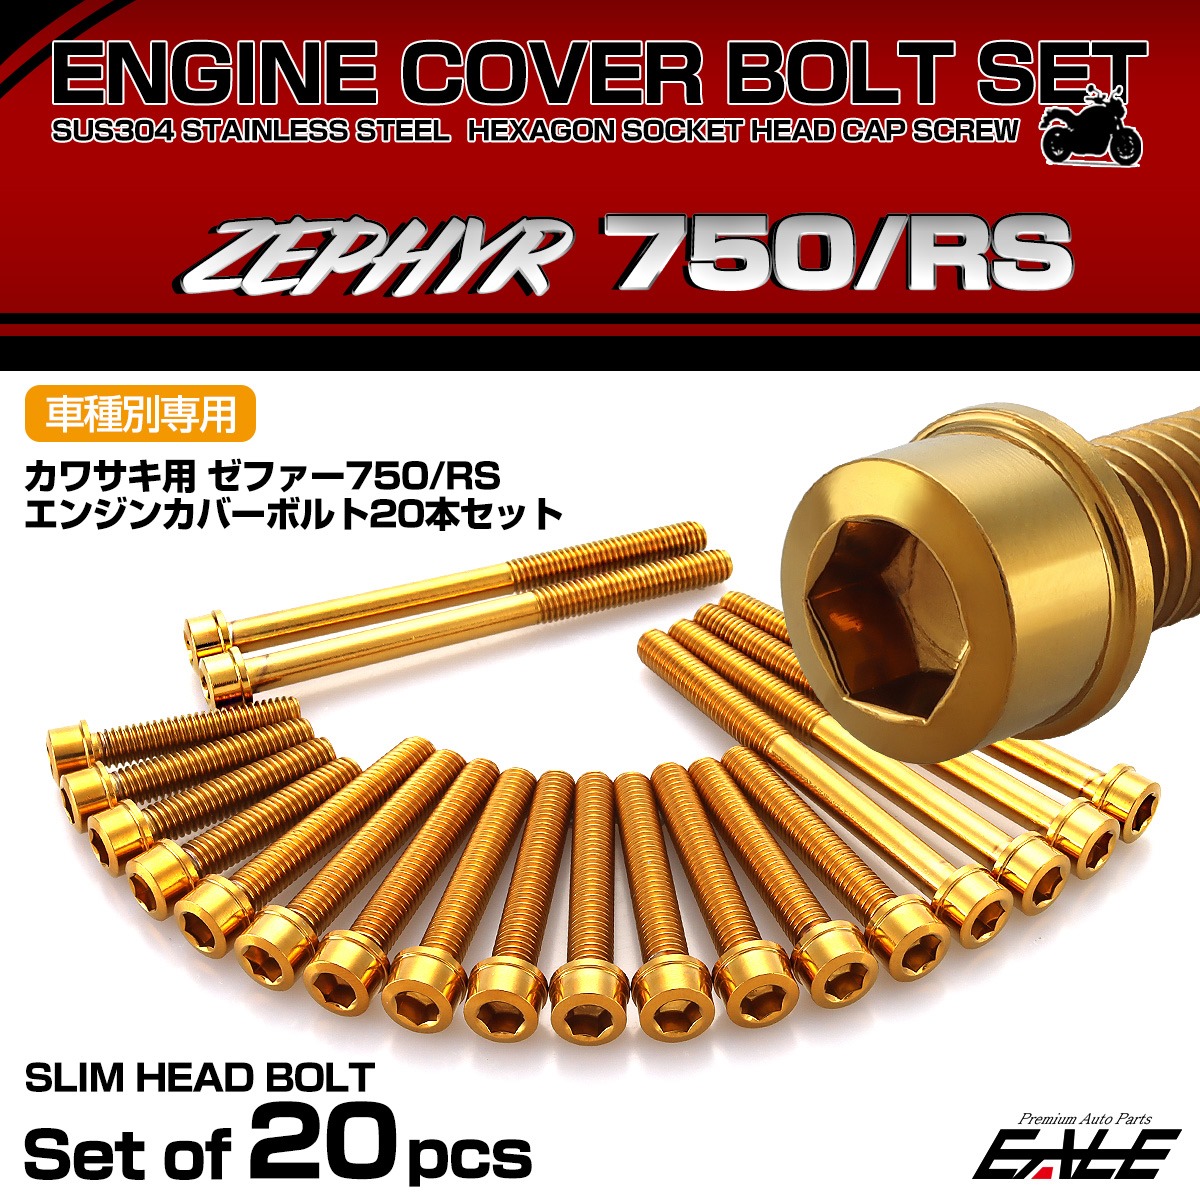  крышка двигателя комплект болтов ZEPHYR Zephyr 750 RS 20 шт. комплект тонкий head Kawasaki для Gold TB8964